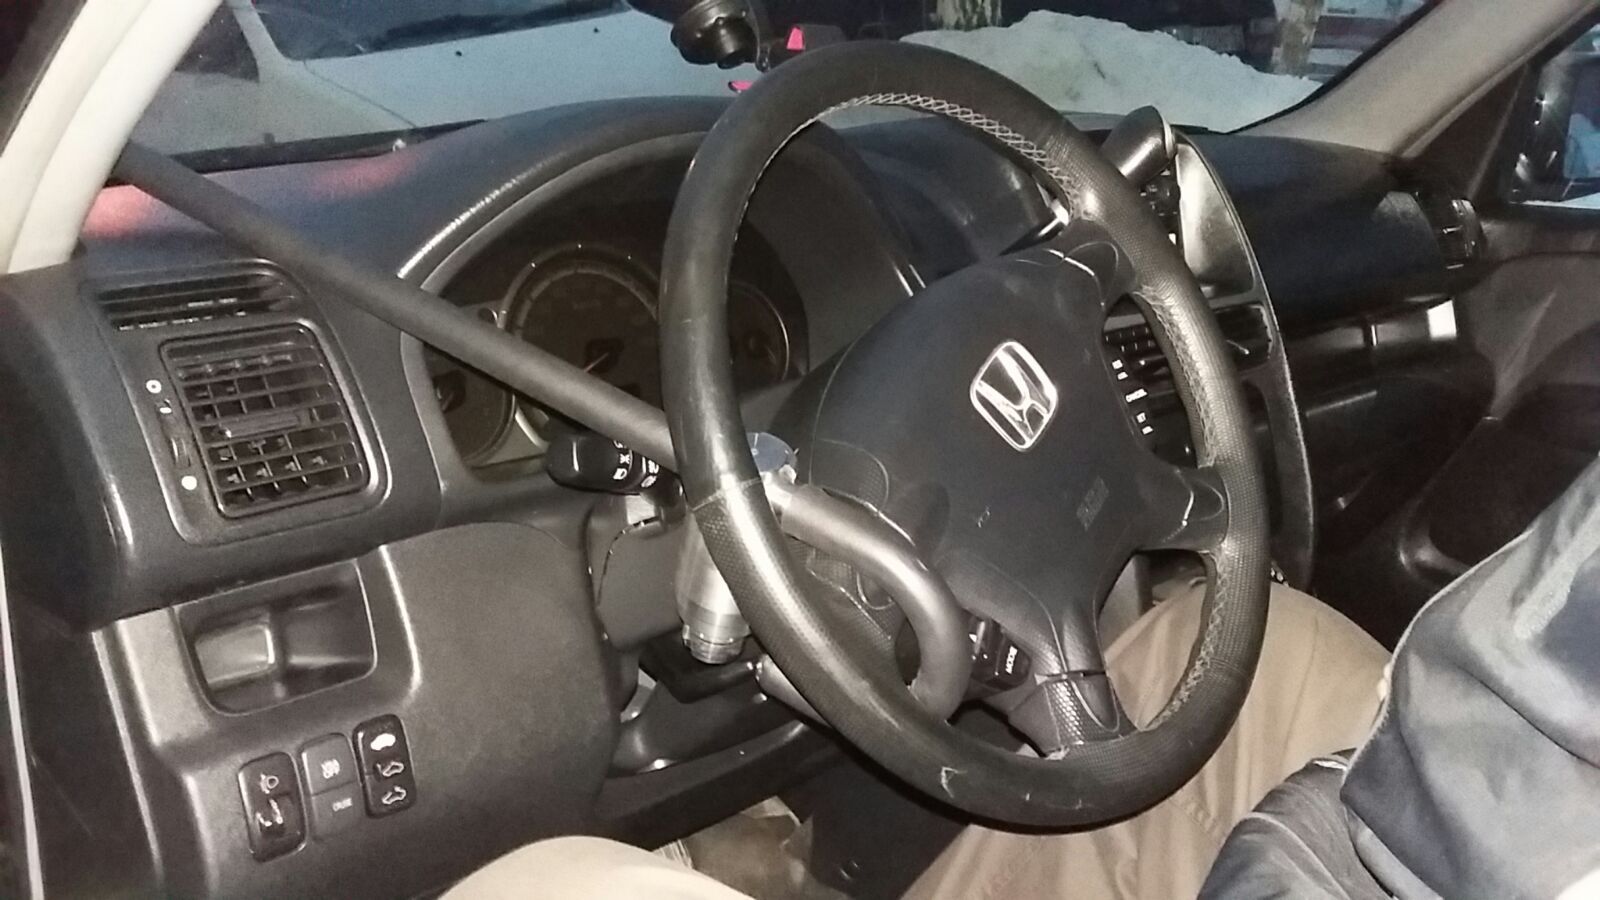 Блокиратор руля Питон установленный на автомобиле Honda CR-V 2002-2006